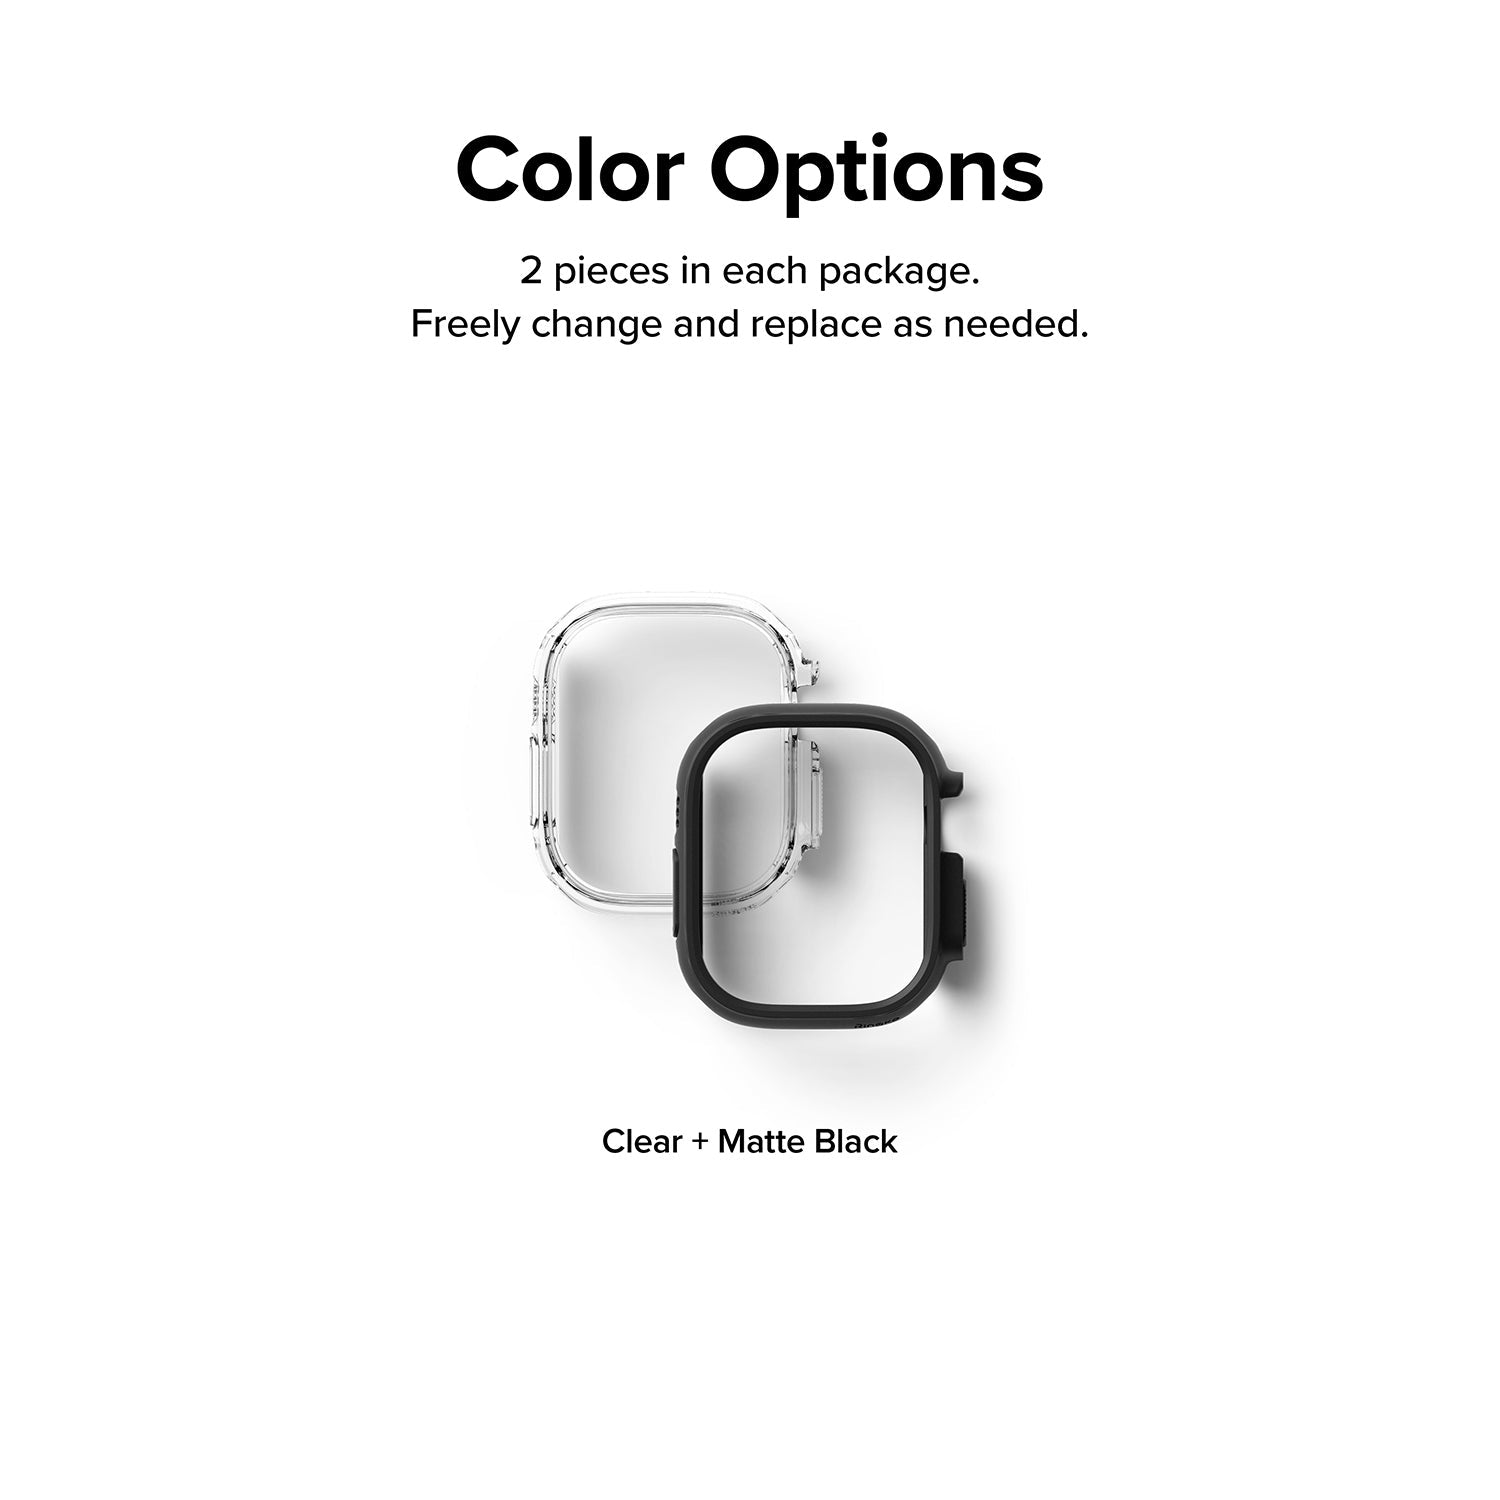 Ringke Slim Case for Apple Watch Ultra 49mm Apple Watch Case Ringke 